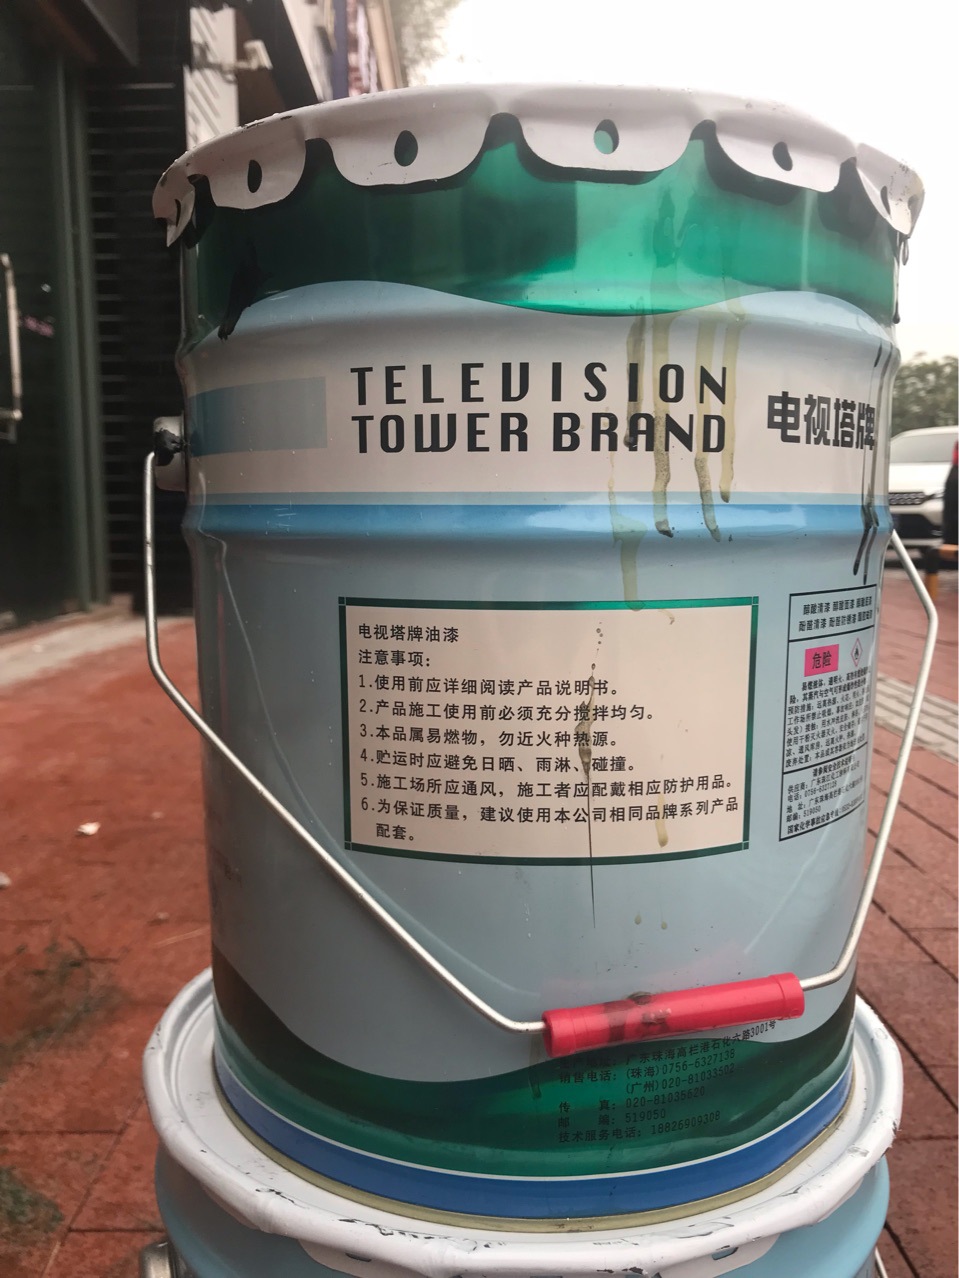 电视塔牌油漆醇酸稀释剂